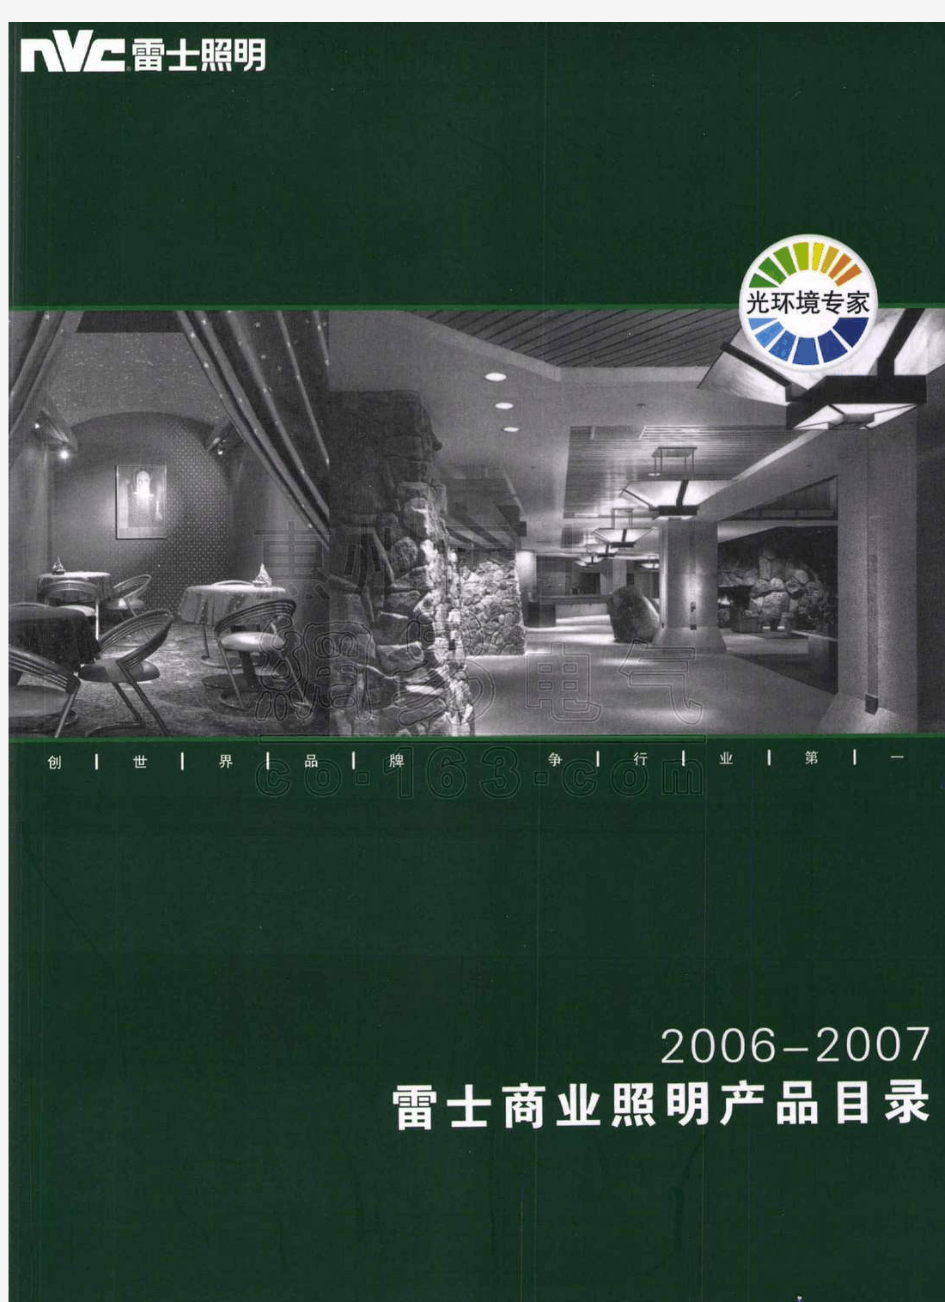 雷士商业照明产品手册(上册)